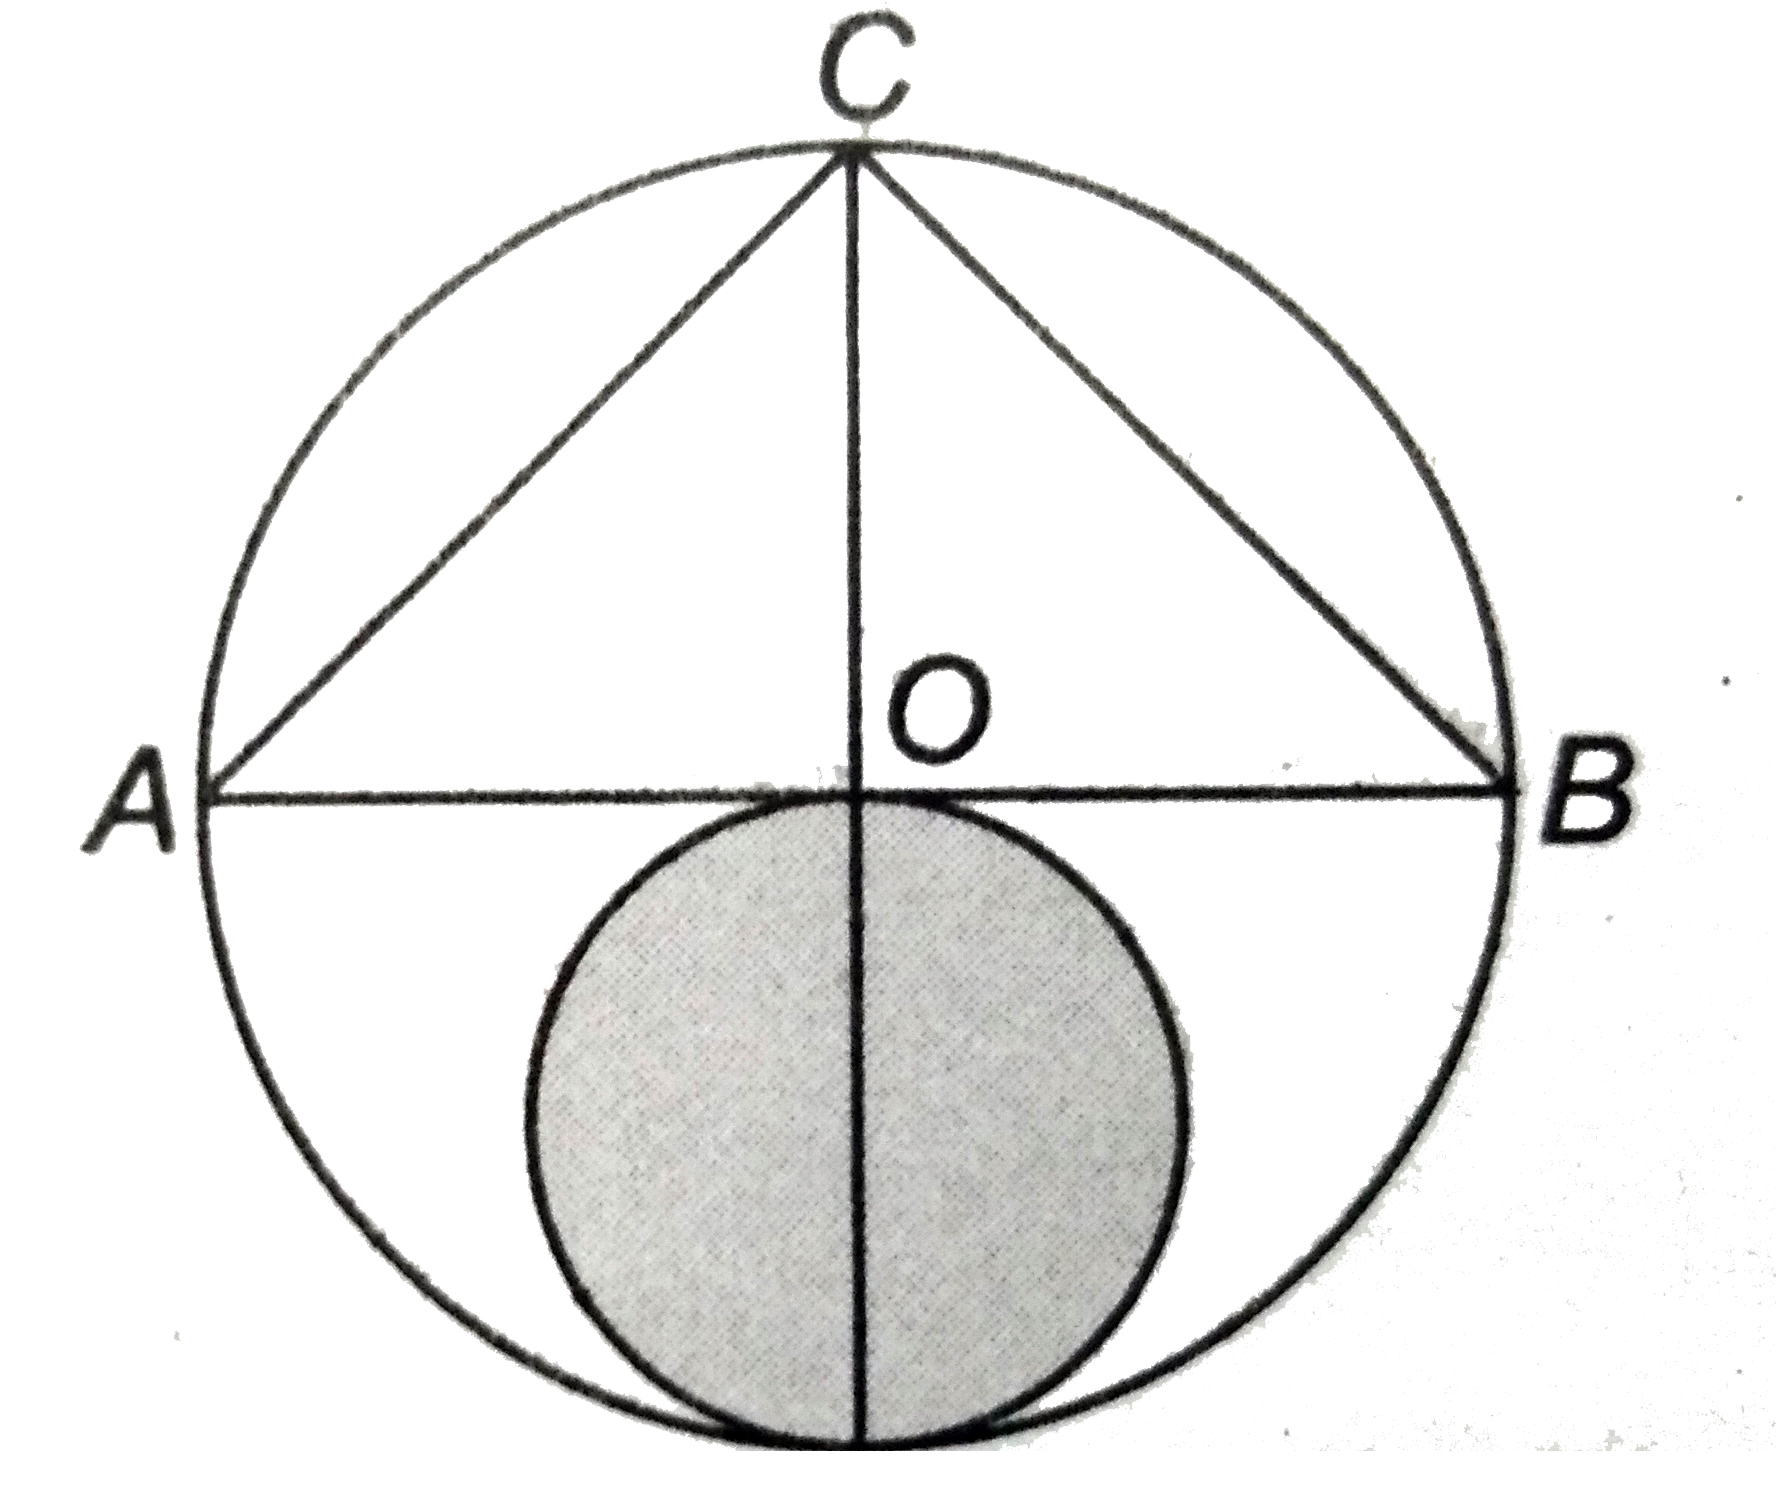 दिये चित्र  में , 14  सेमी त्रिज्या  के वृत्त का केंद्र  O  है । छायांकित  भाग का क्षेत्रफल  ज्ञात कीजिए ।